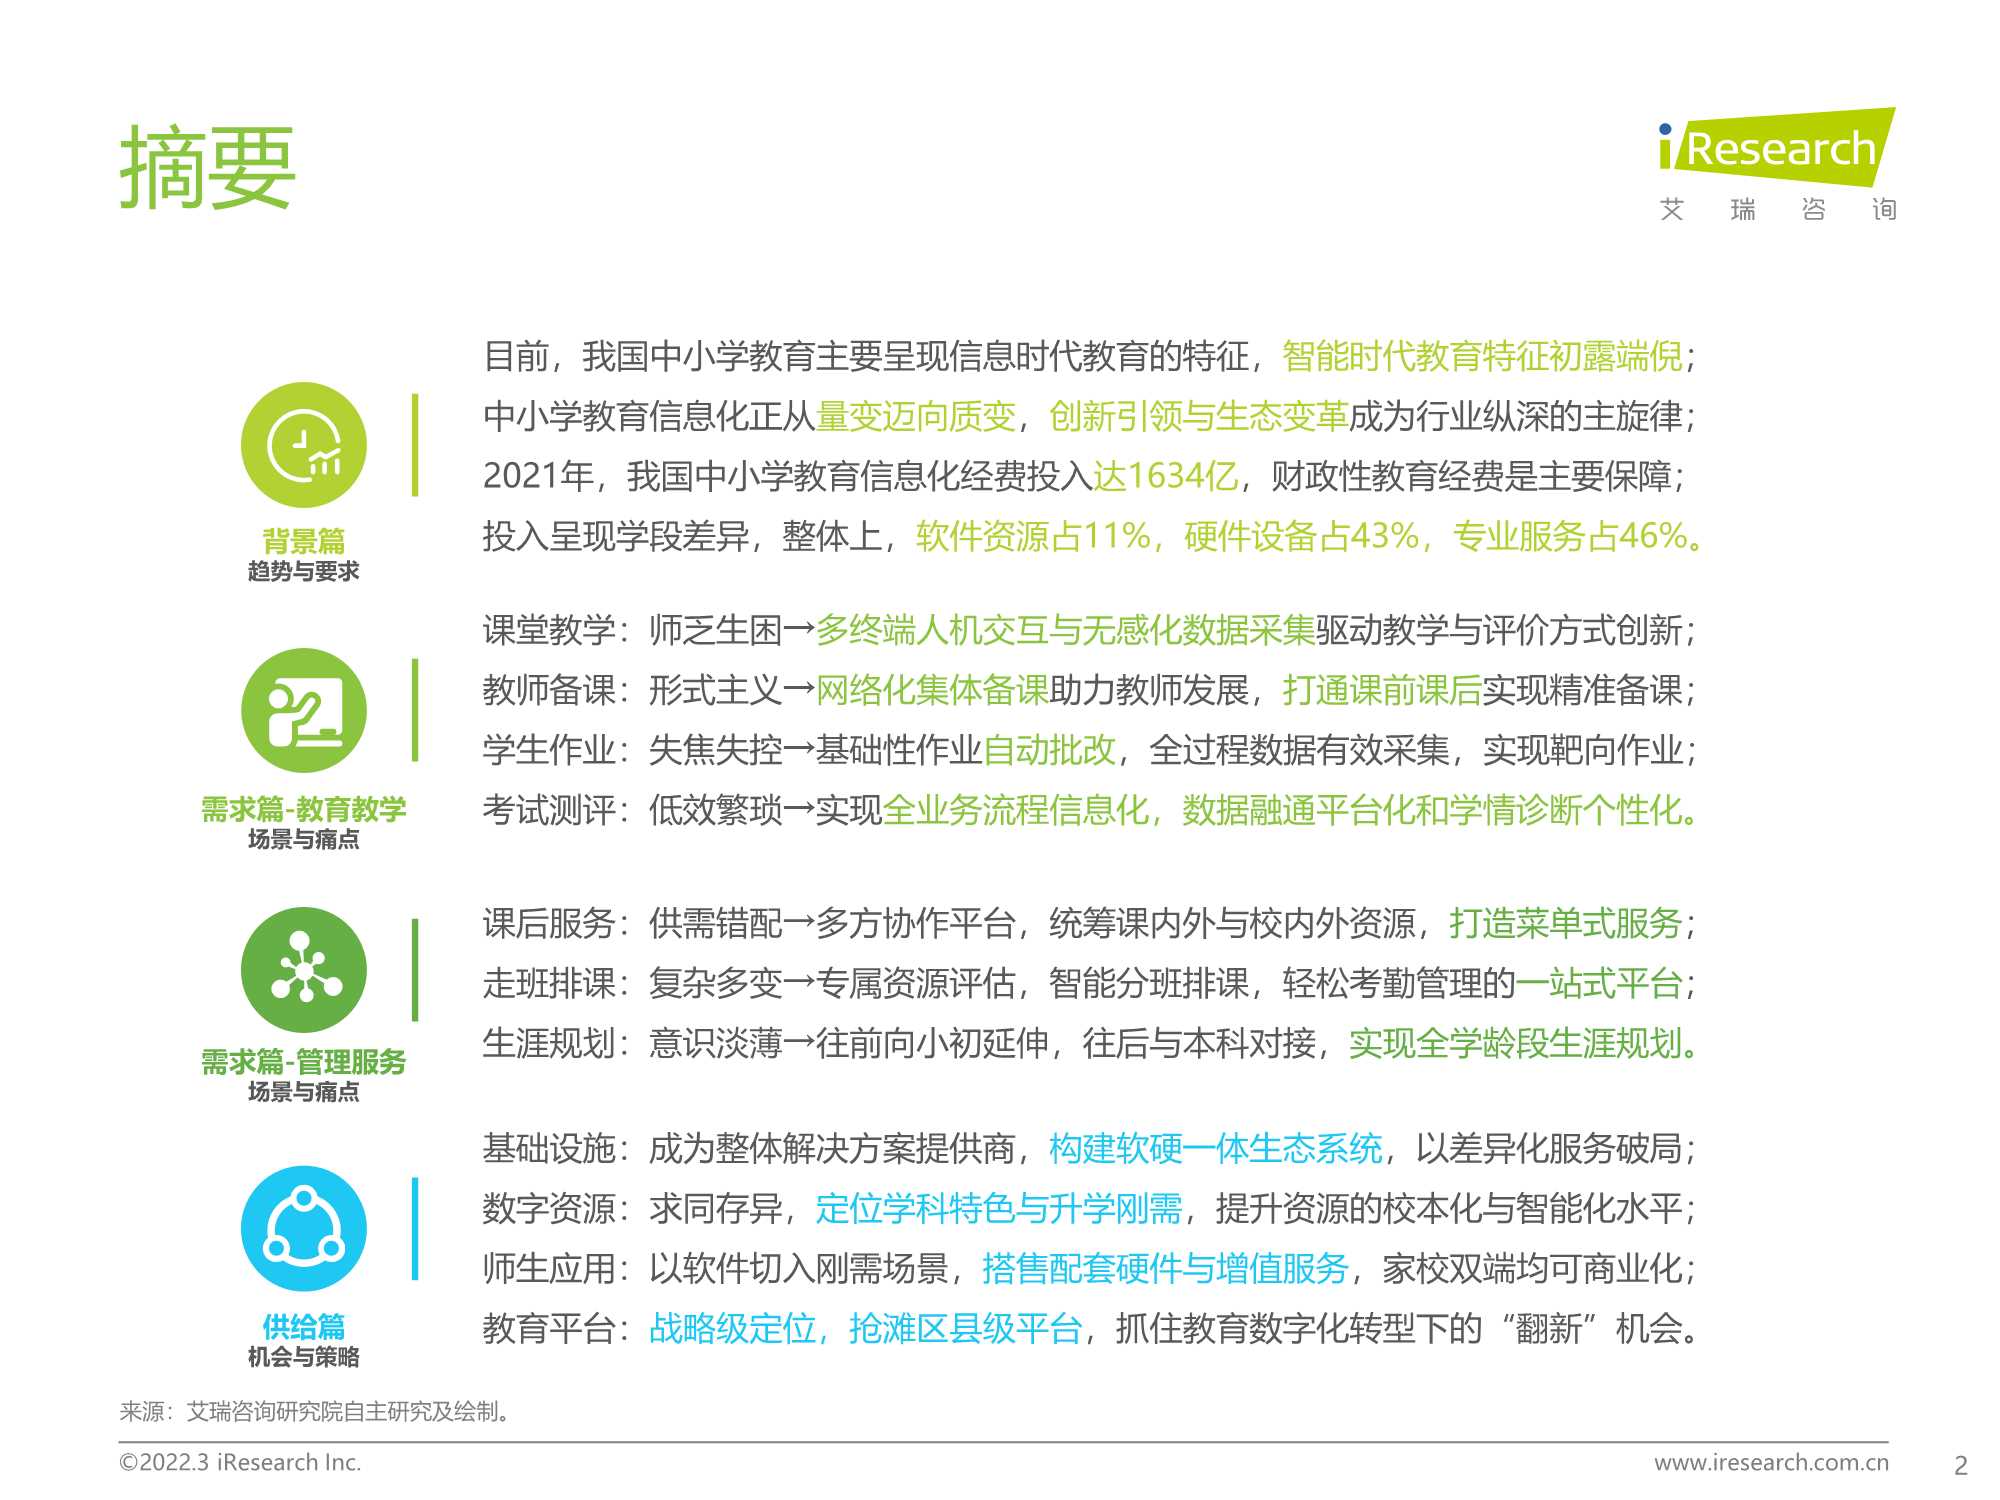 艾瑞咨询-2022年中国中小学教育信息化行业研究报告-2022.03-62页